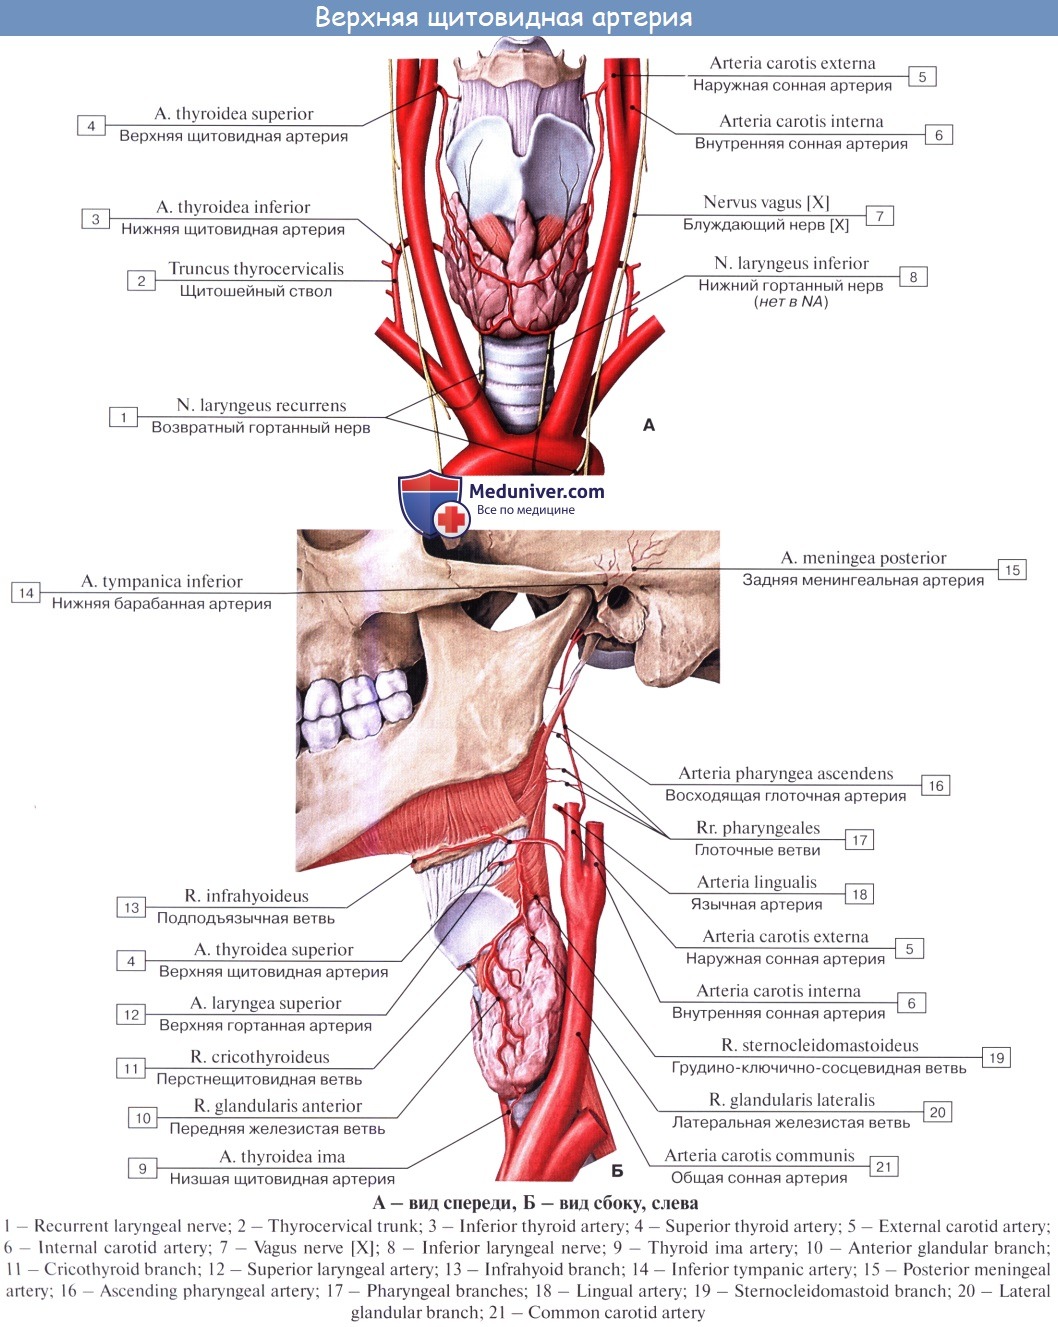 Нерв глотки. A. thyroidea Superior верхняя щитовидная артерия. Верхняя щитовидная и язычная артерия. Возвратный гортанный нерв топография анатомия. Язычная артерия в треугольнике Пирогова.